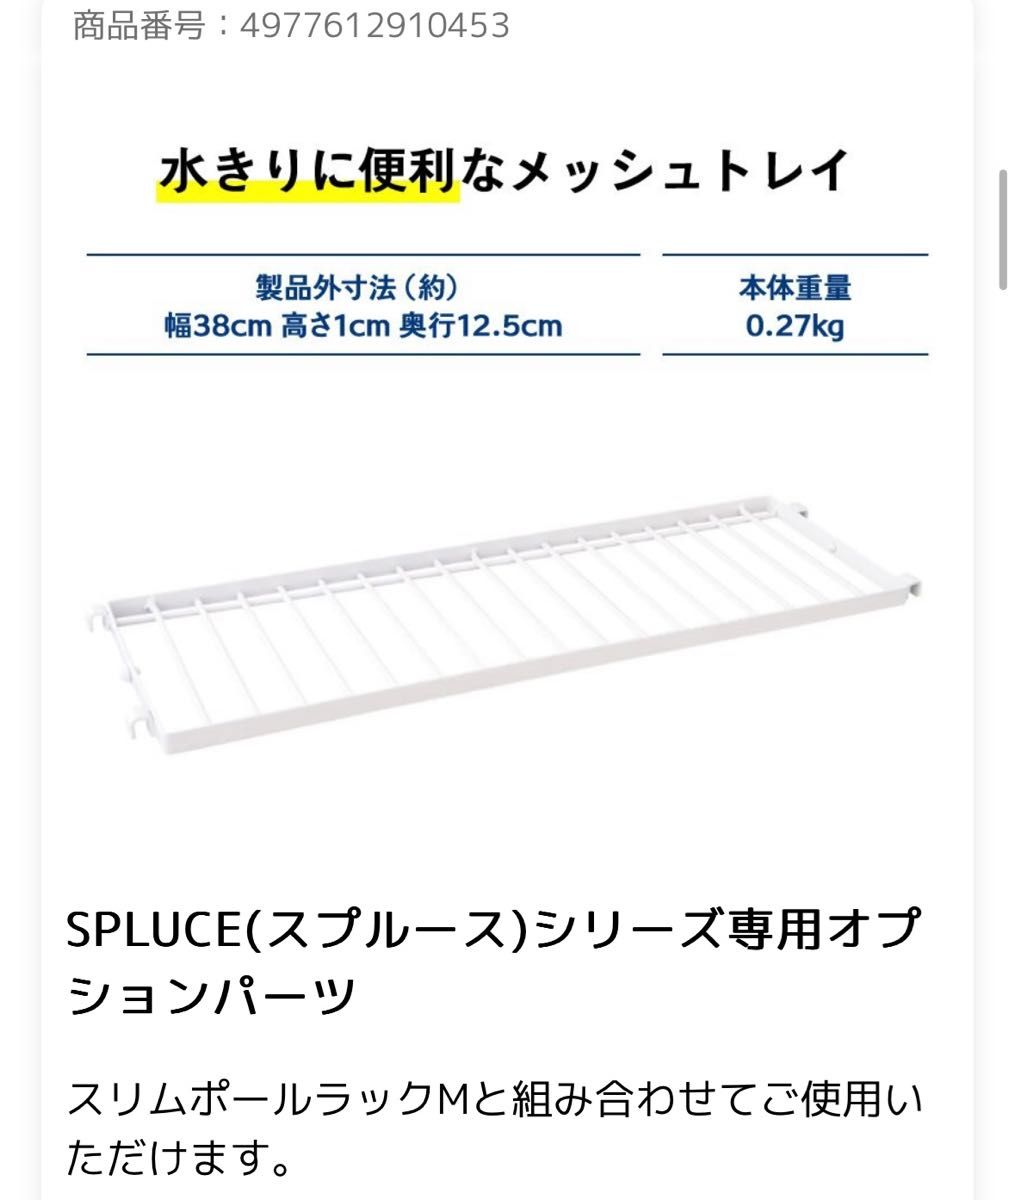 メッシュトレイ　キッチン　平安伸銅工業SPP-6 水切り　SPLUCEシリーズ